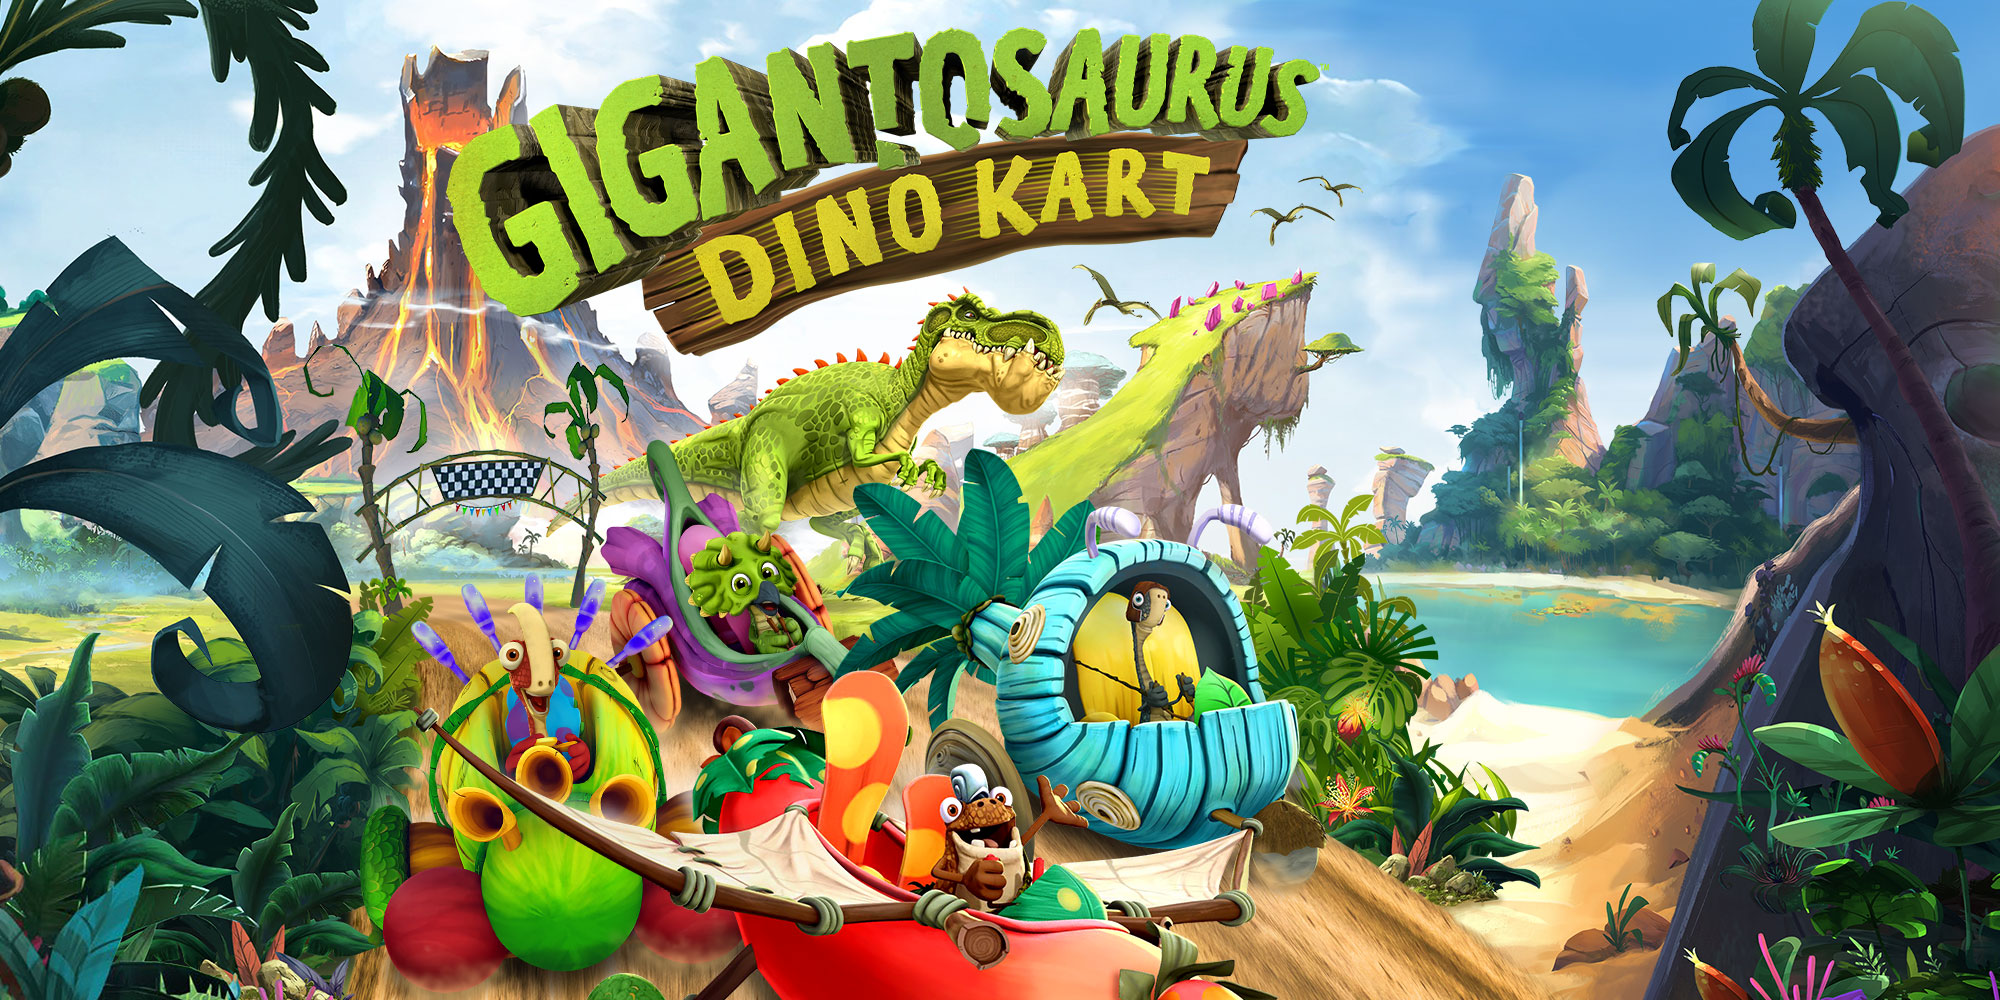 Gigantosaurus: Dino Kart | Nintendo Switch games | Games | Nintendo